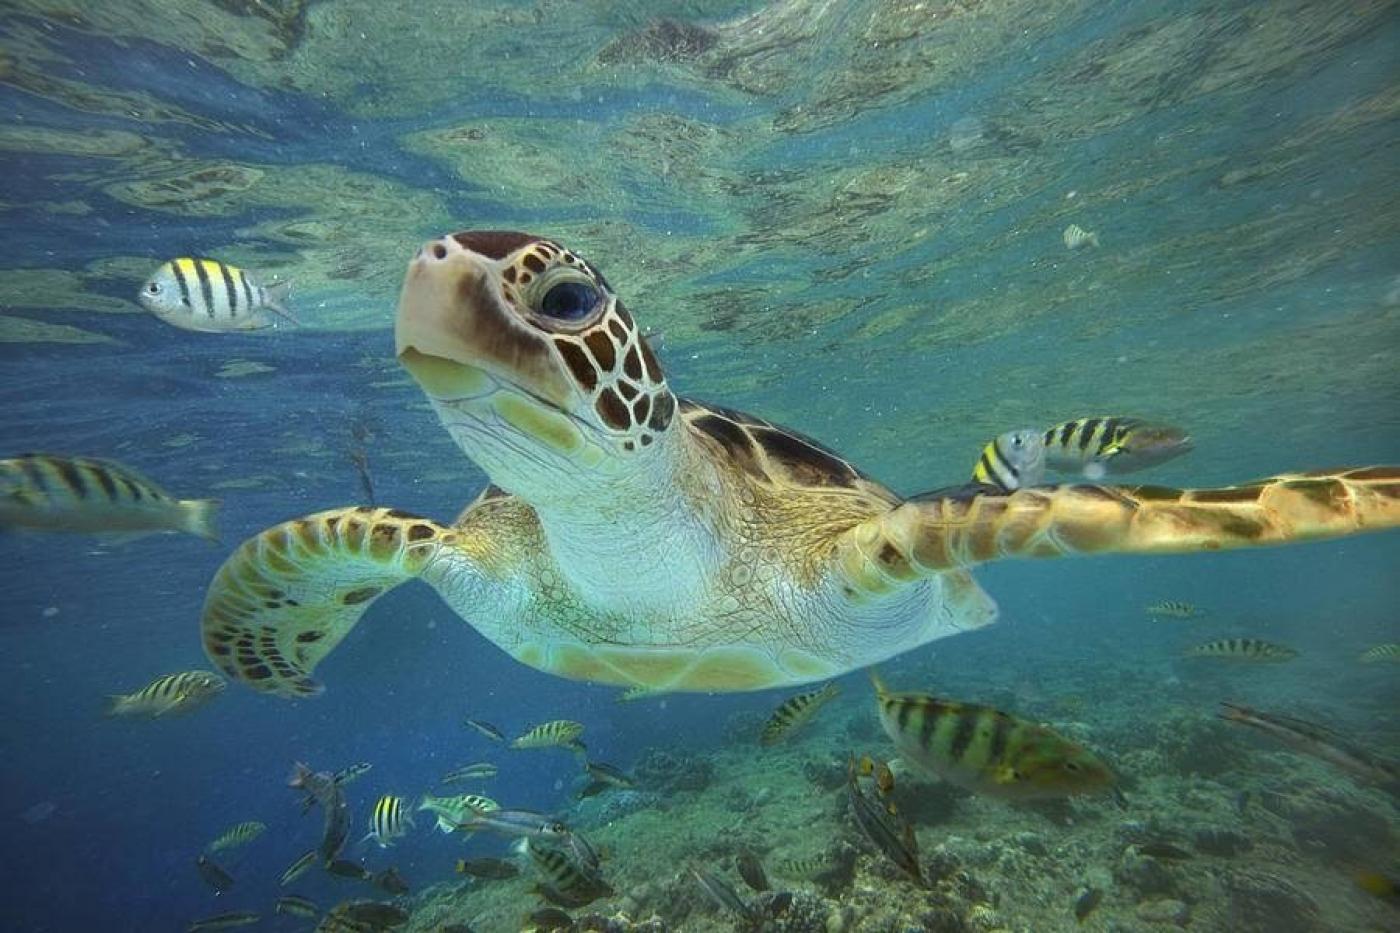 tartaruga dentro do aquário #paratodosverem